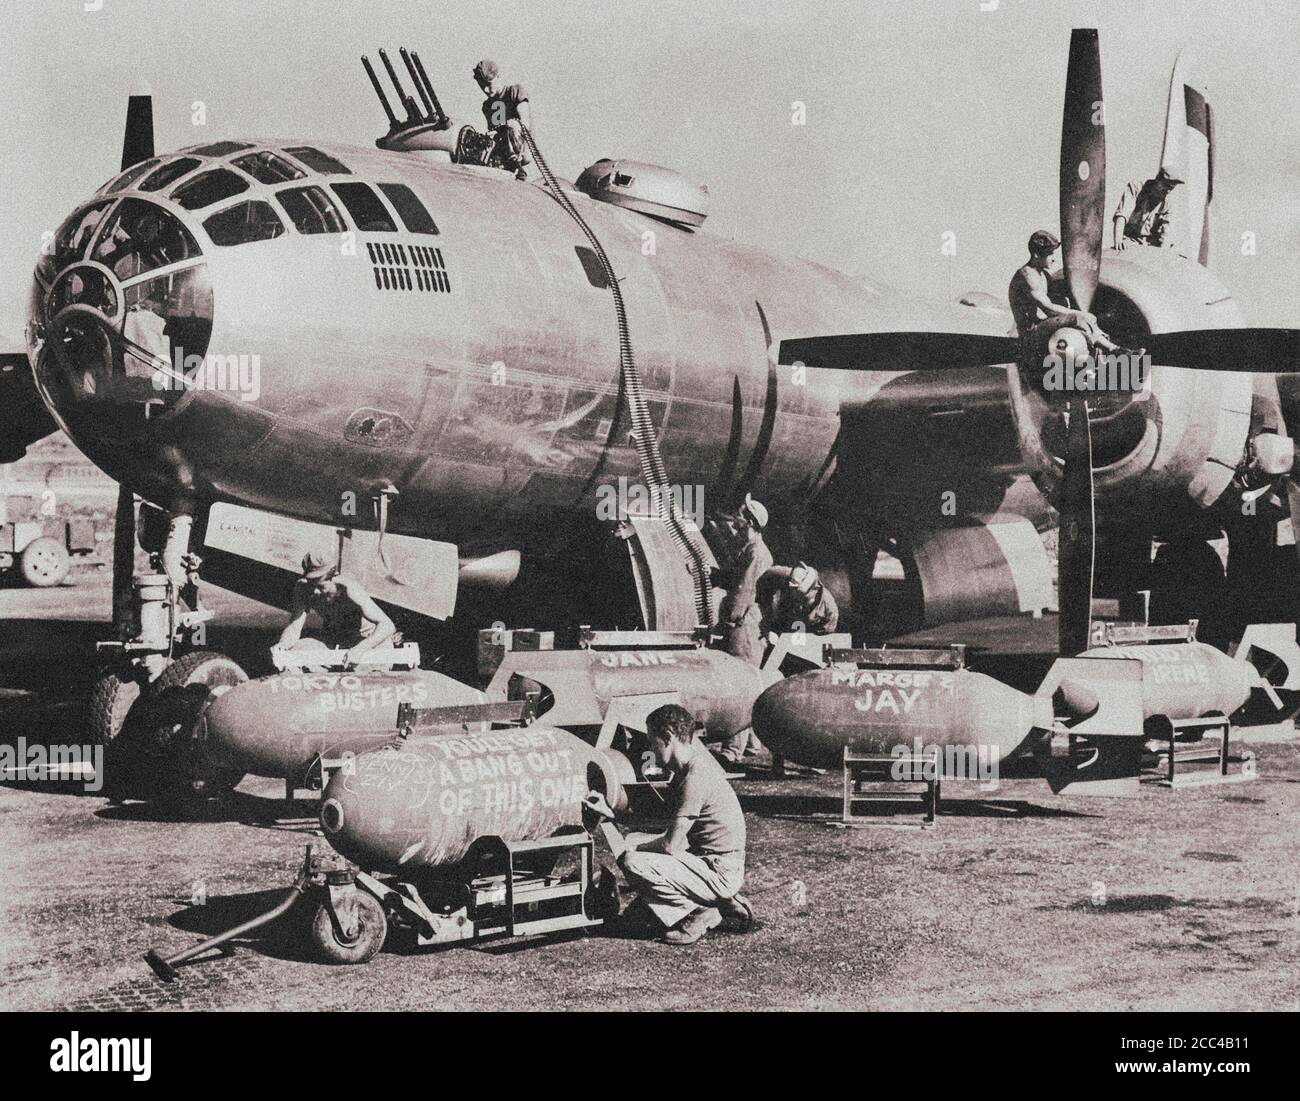 Le personnel technique de l'aérodrome américain charge des munitions dans le bombardier Superforteresse Boeing B-29 du 500e groupe d'bombardiers. Le bombardier Boeing B-29 est en préparation Banque D'Images